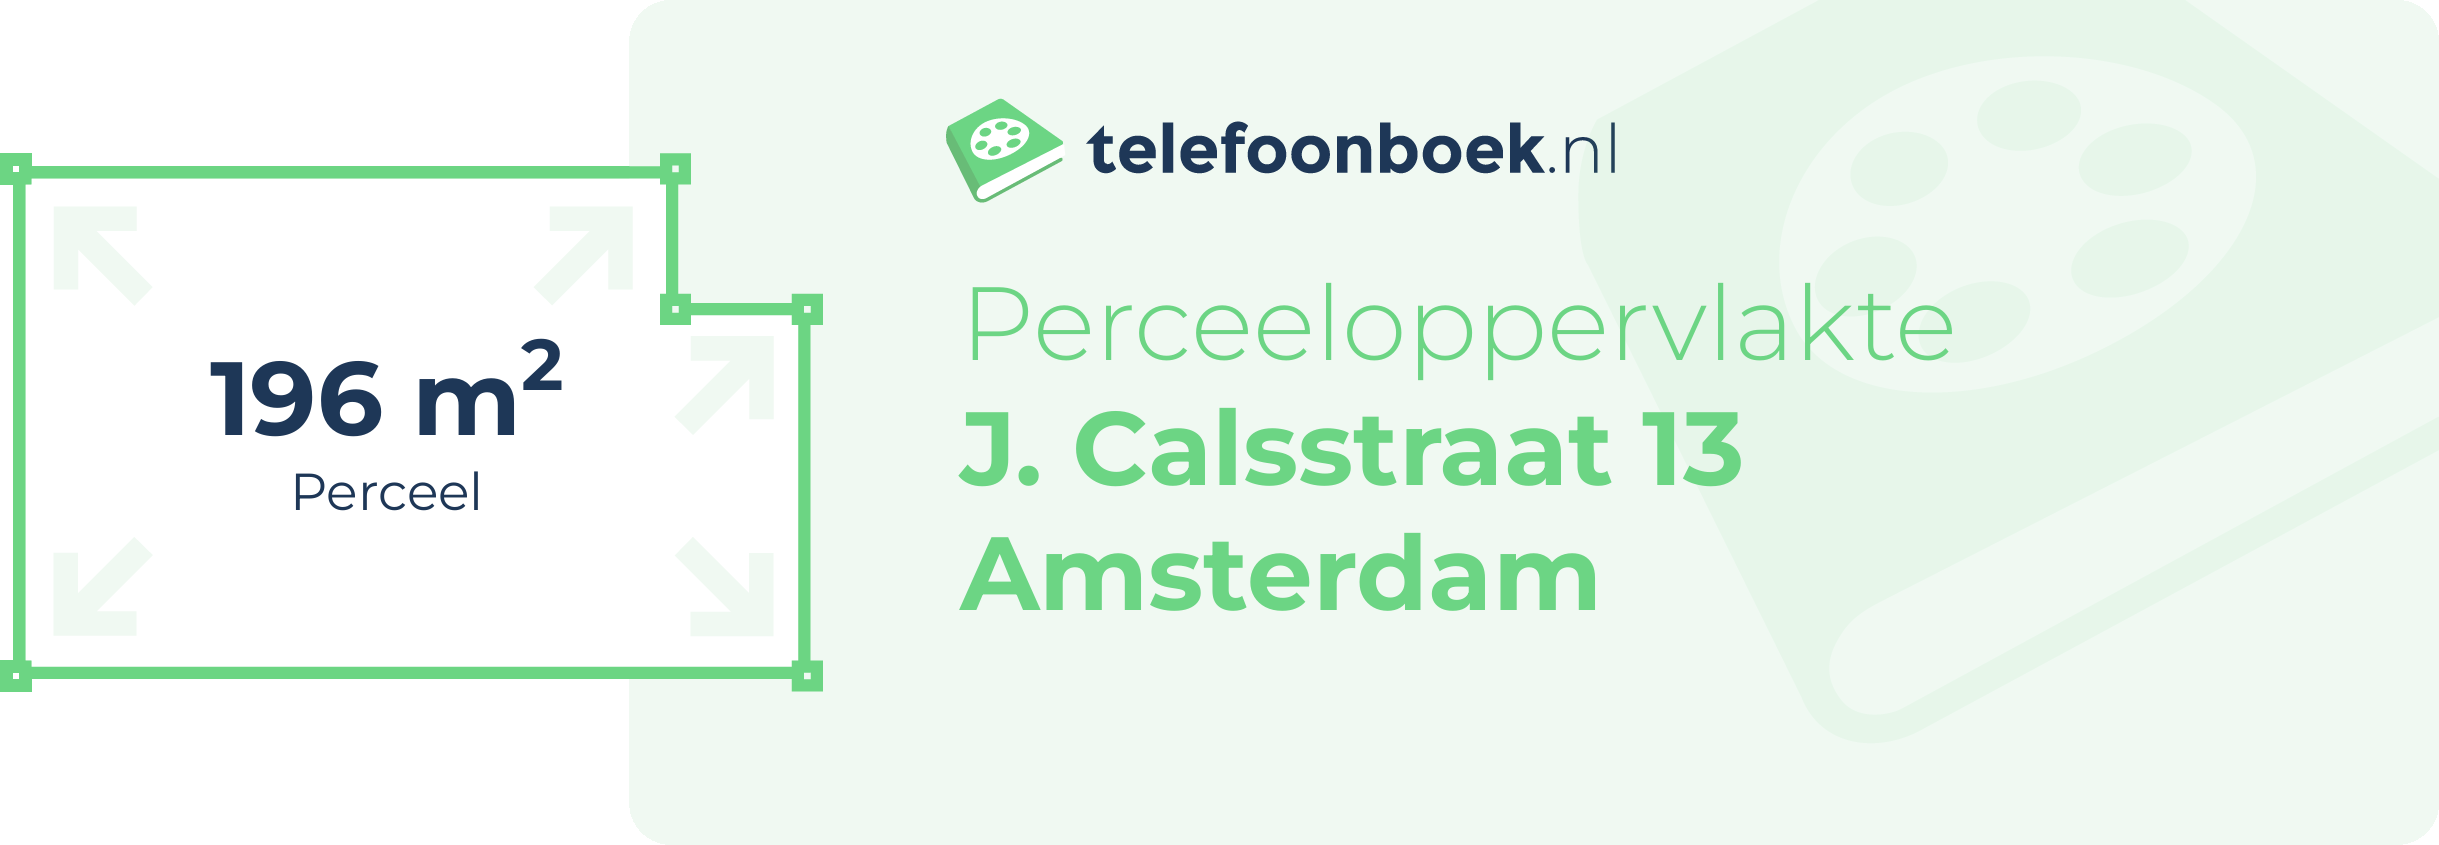 Perceeloppervlakte J. Calsstraat 13 Amsterdam